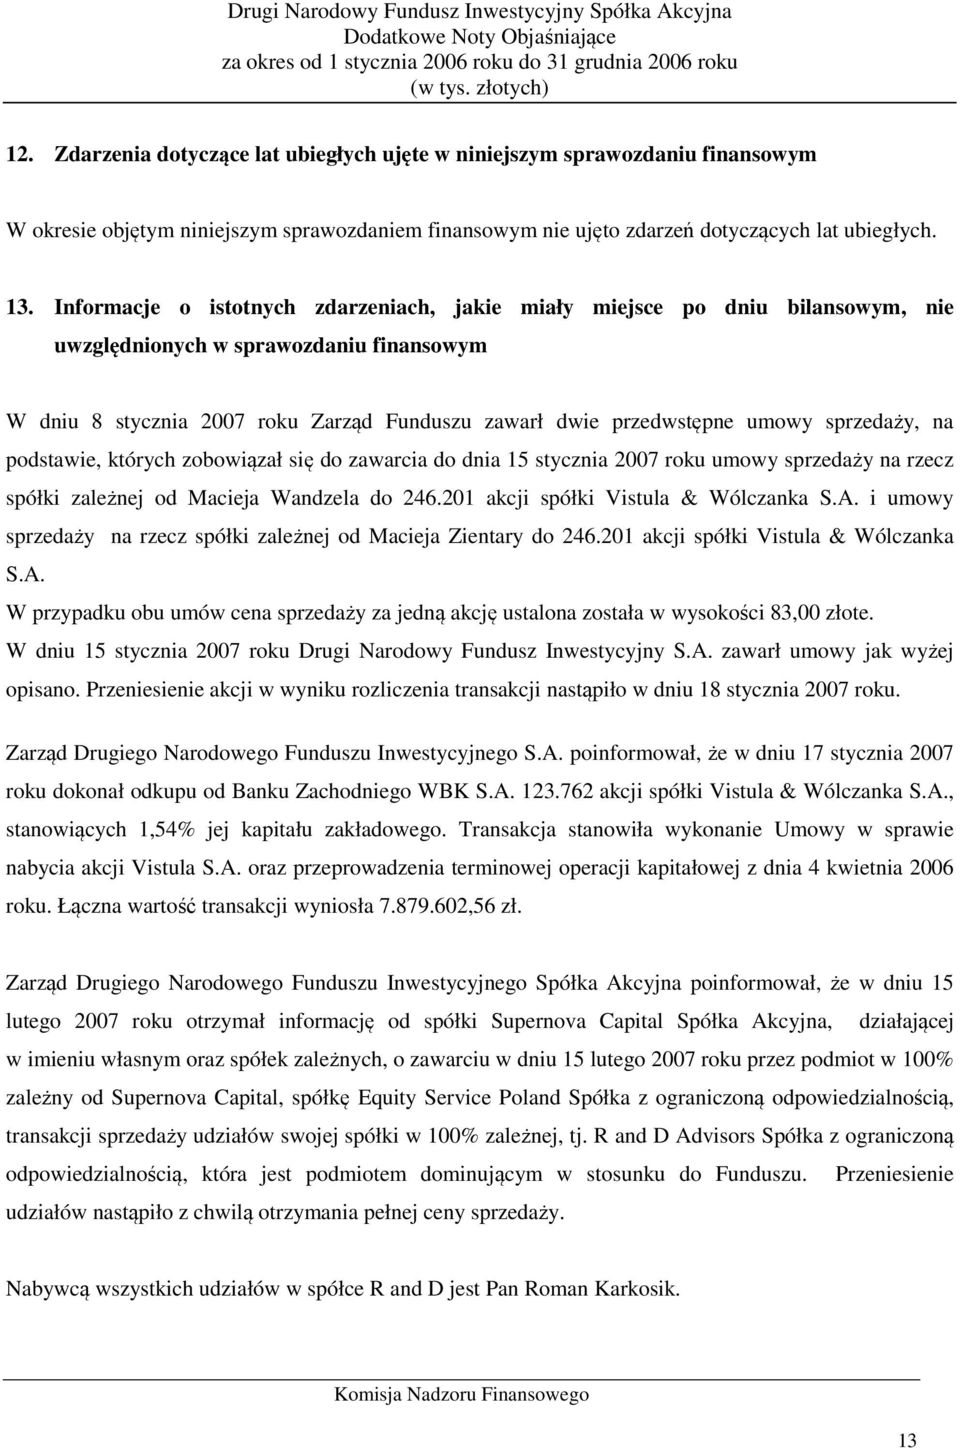 sprzedaży, na podstawie, których zobowiązał się do zawarcia do dnia 15 stycznia 2007 roku umowy sprzedaży na rzecz spółki zależnej od Macieja Wandzela do 246.201 akcji spółki Vistula & Wólczanka S.A.